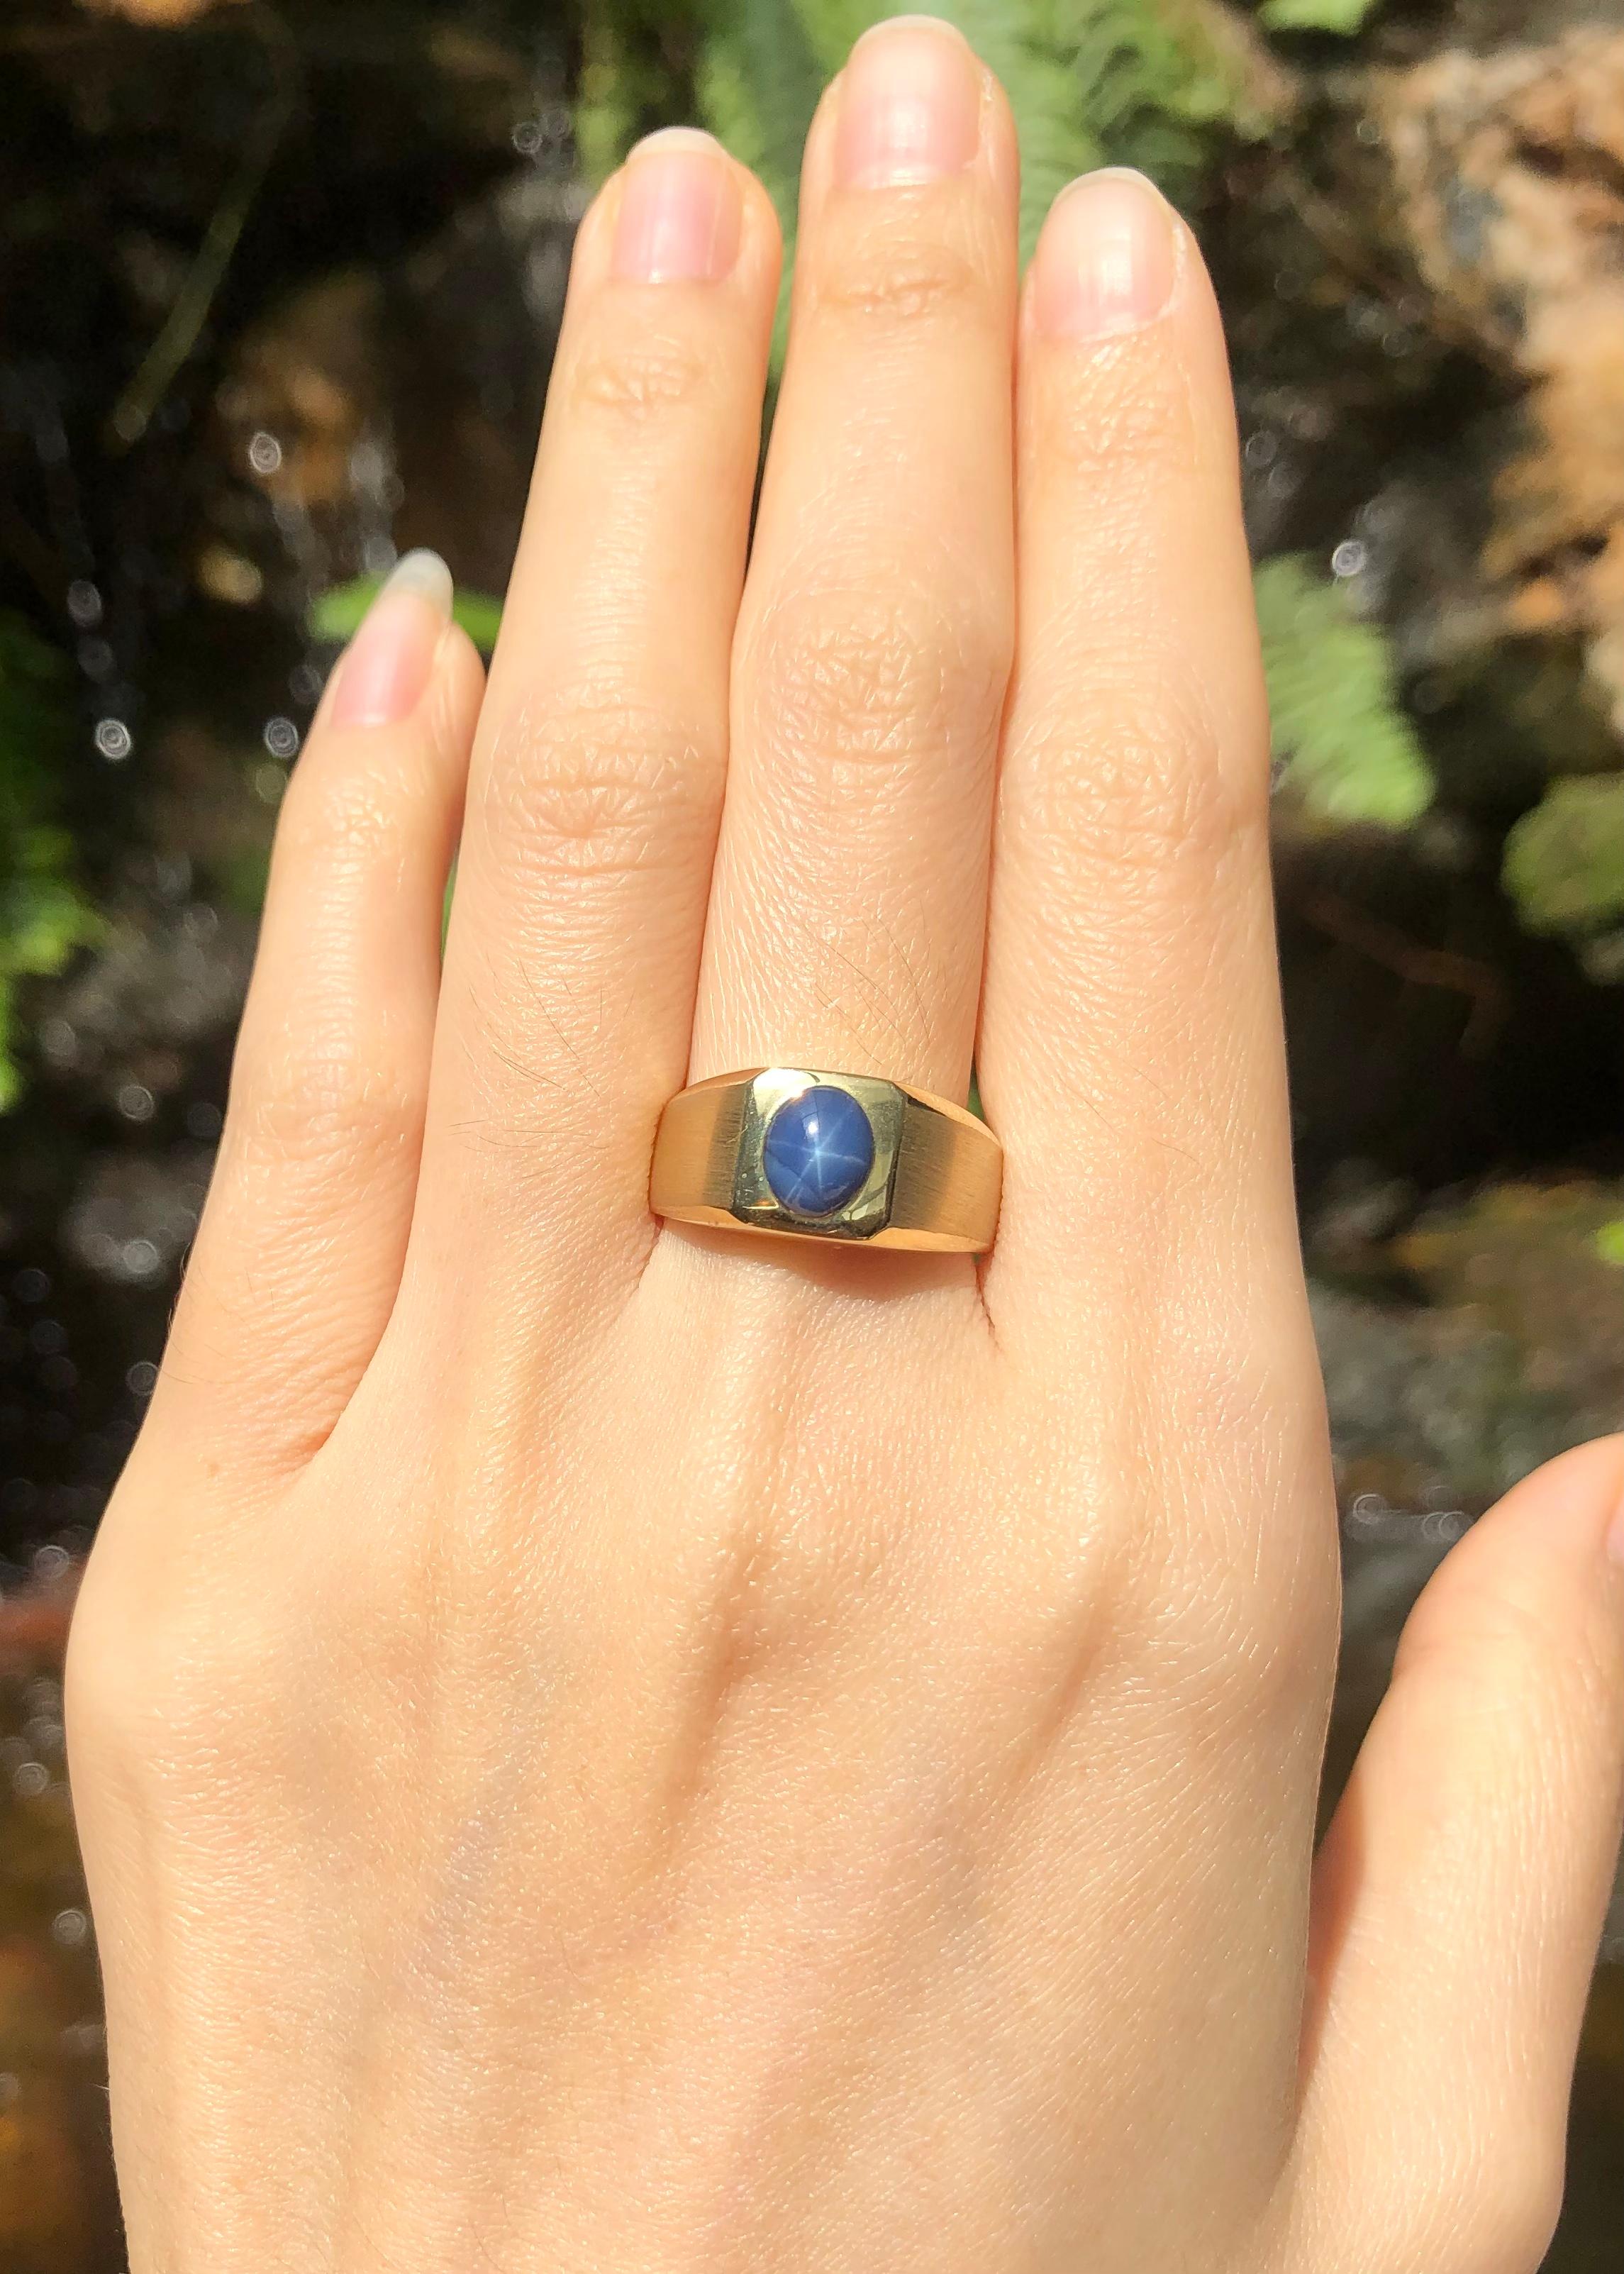 Blauer Stern Saphir 1,53 Karat Ring in 18 Karat Goldfassung

Breite:  0.8 cm 
Länge: 0,9 cm
Ringgröße: 59
Gesamtgewicht: 6,71 Gramm


